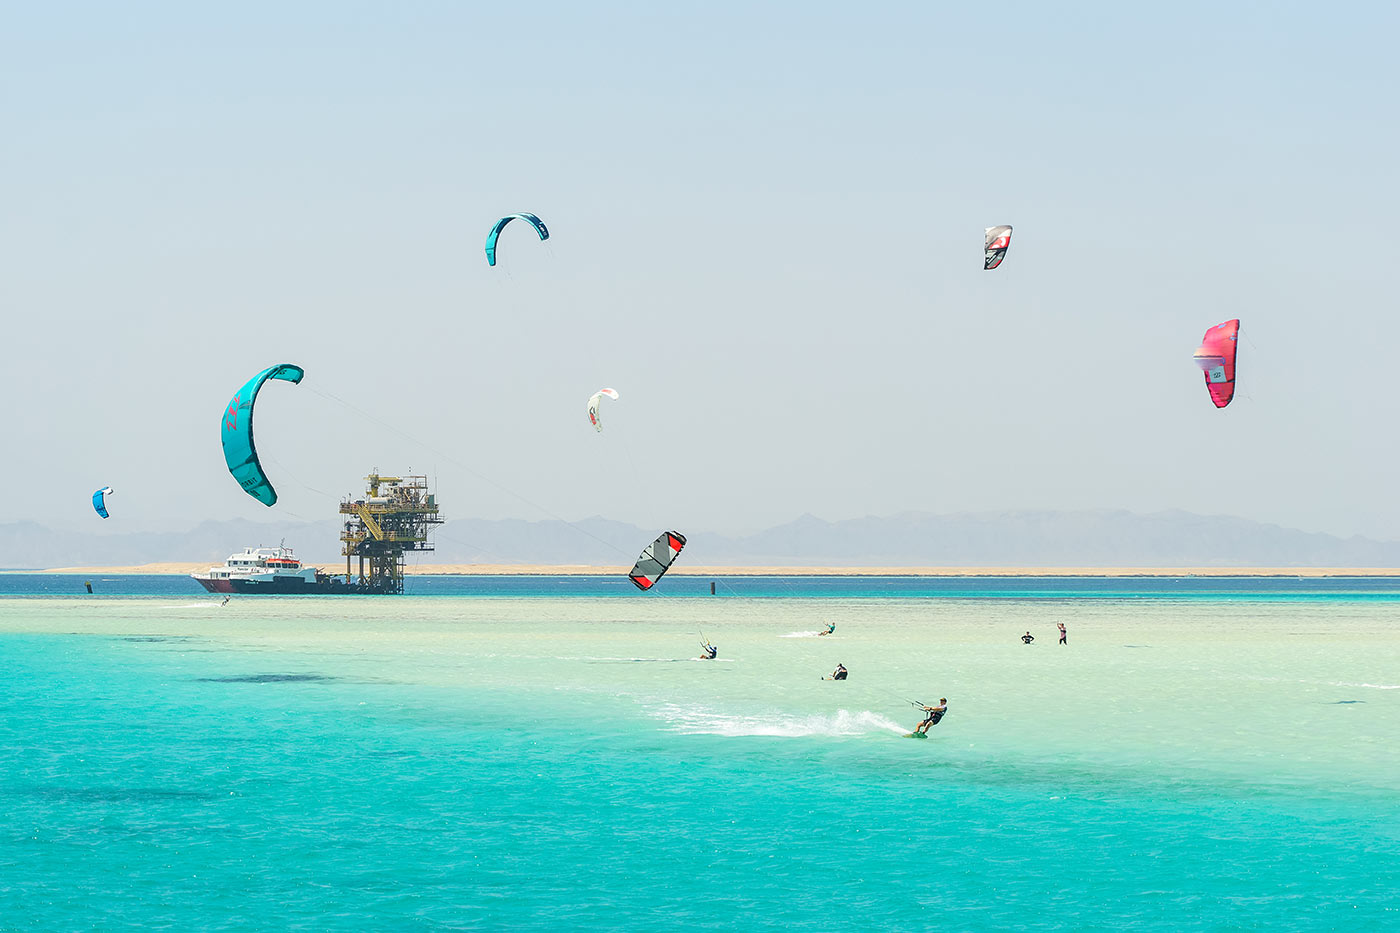 Kite safari in Egypt